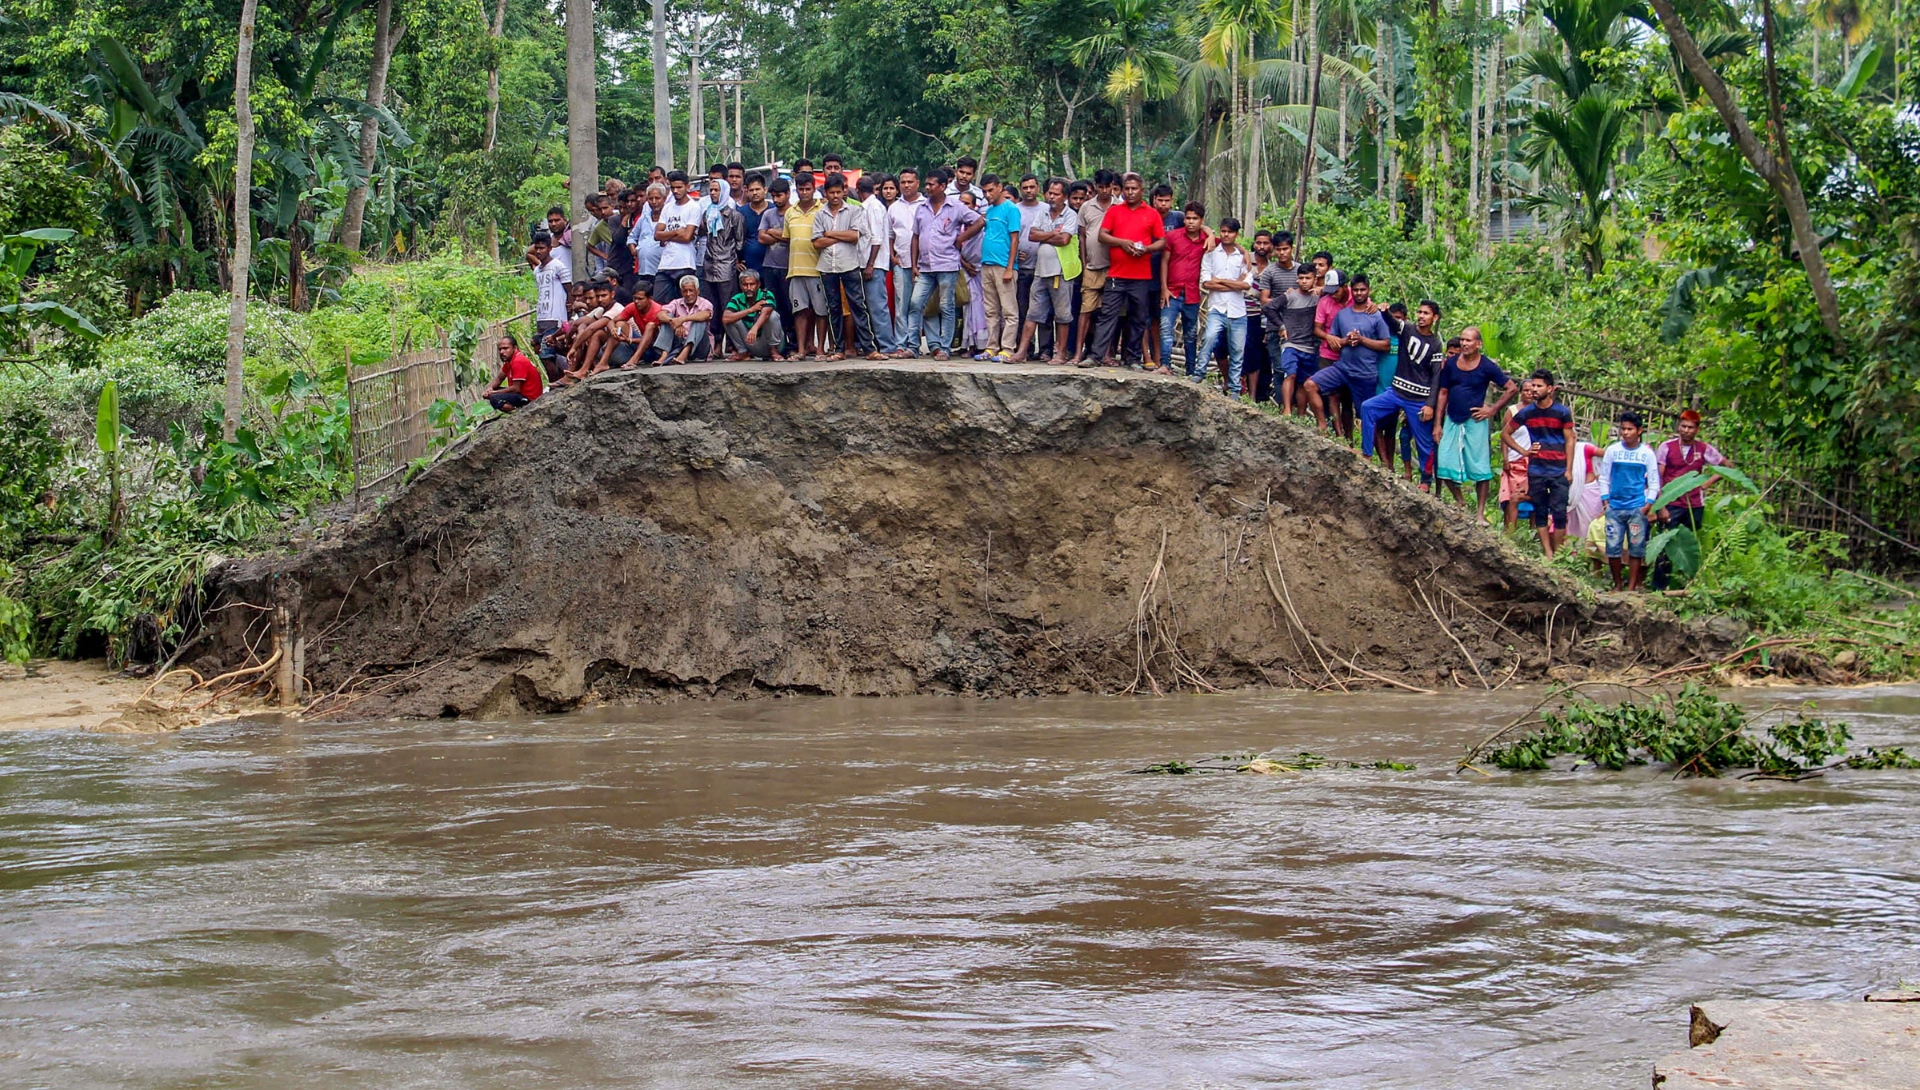 Assam floods, Kamrup, stranded people - The Federal